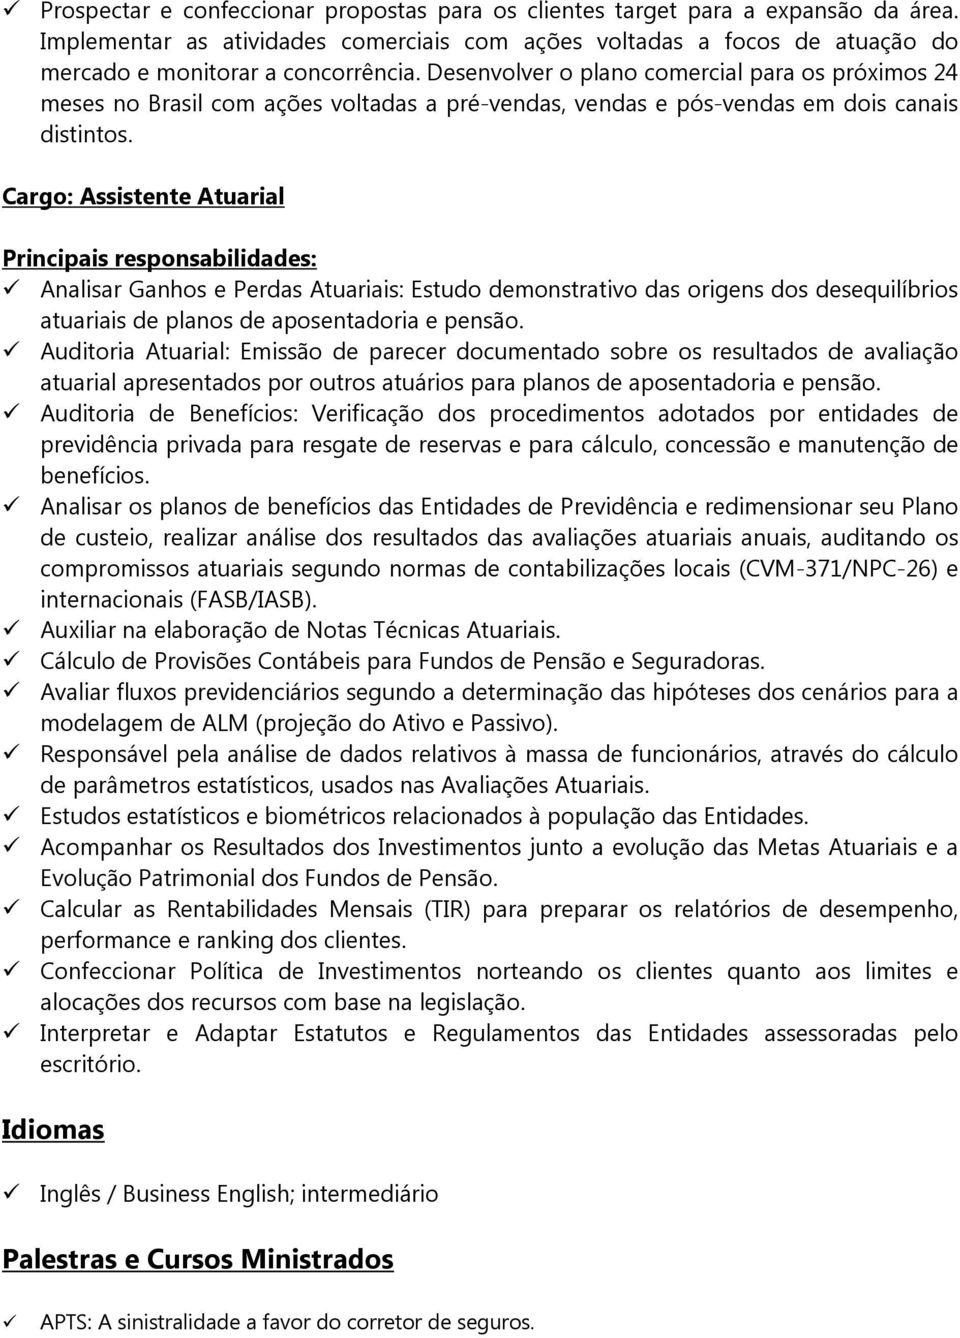 Cargo: Assistente Atuarial Analisar Ganhos e Perdas Atuariais: Estudo demonstrativo das origens dos desequilíbrios atuariais de planos de aposentadoria e pensão.